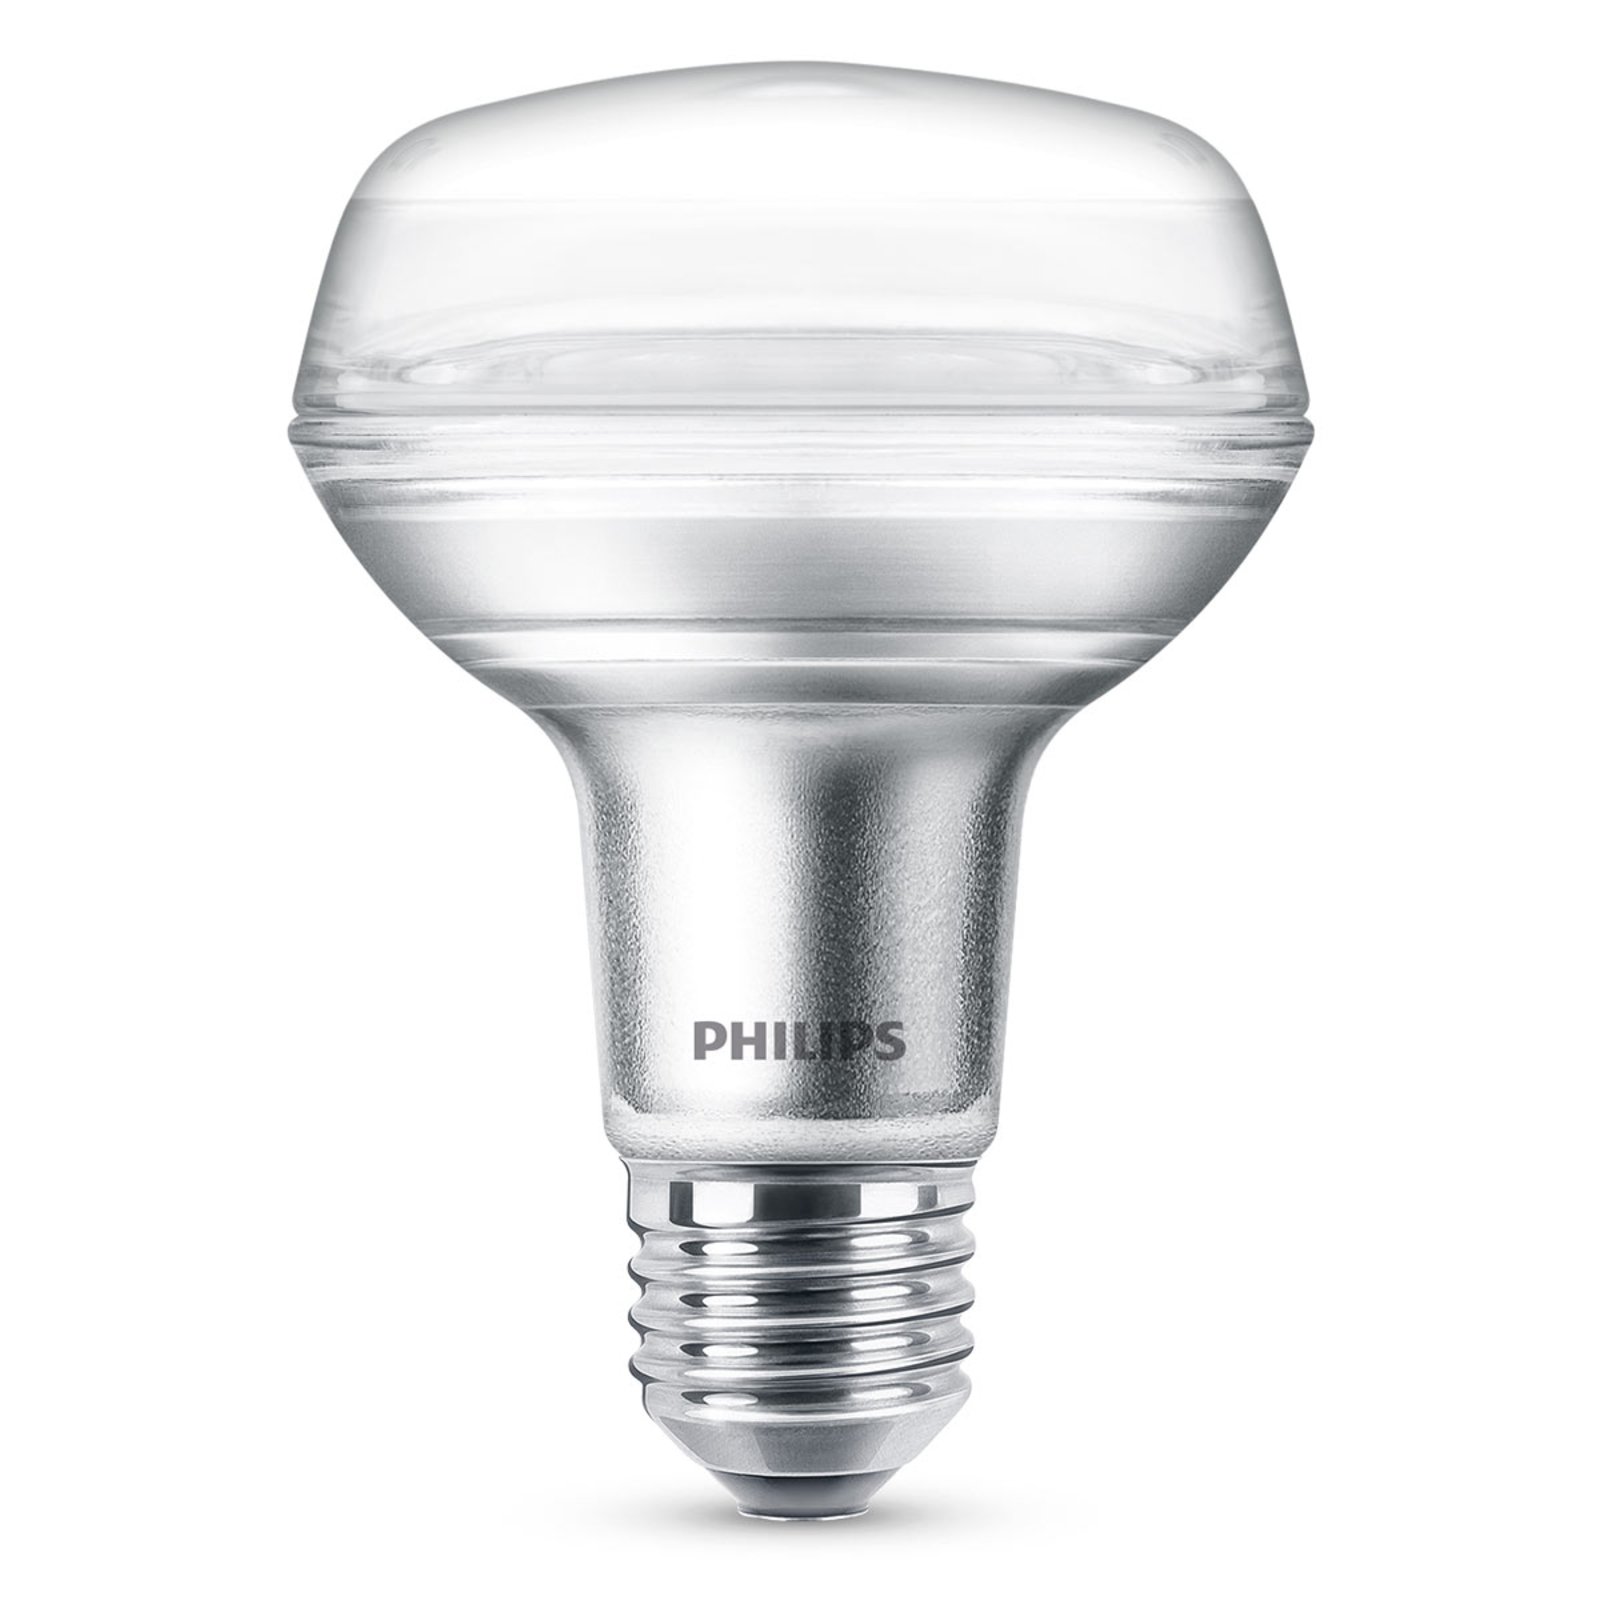 Philips bombilla reflectora LED E27 R80 4W 827